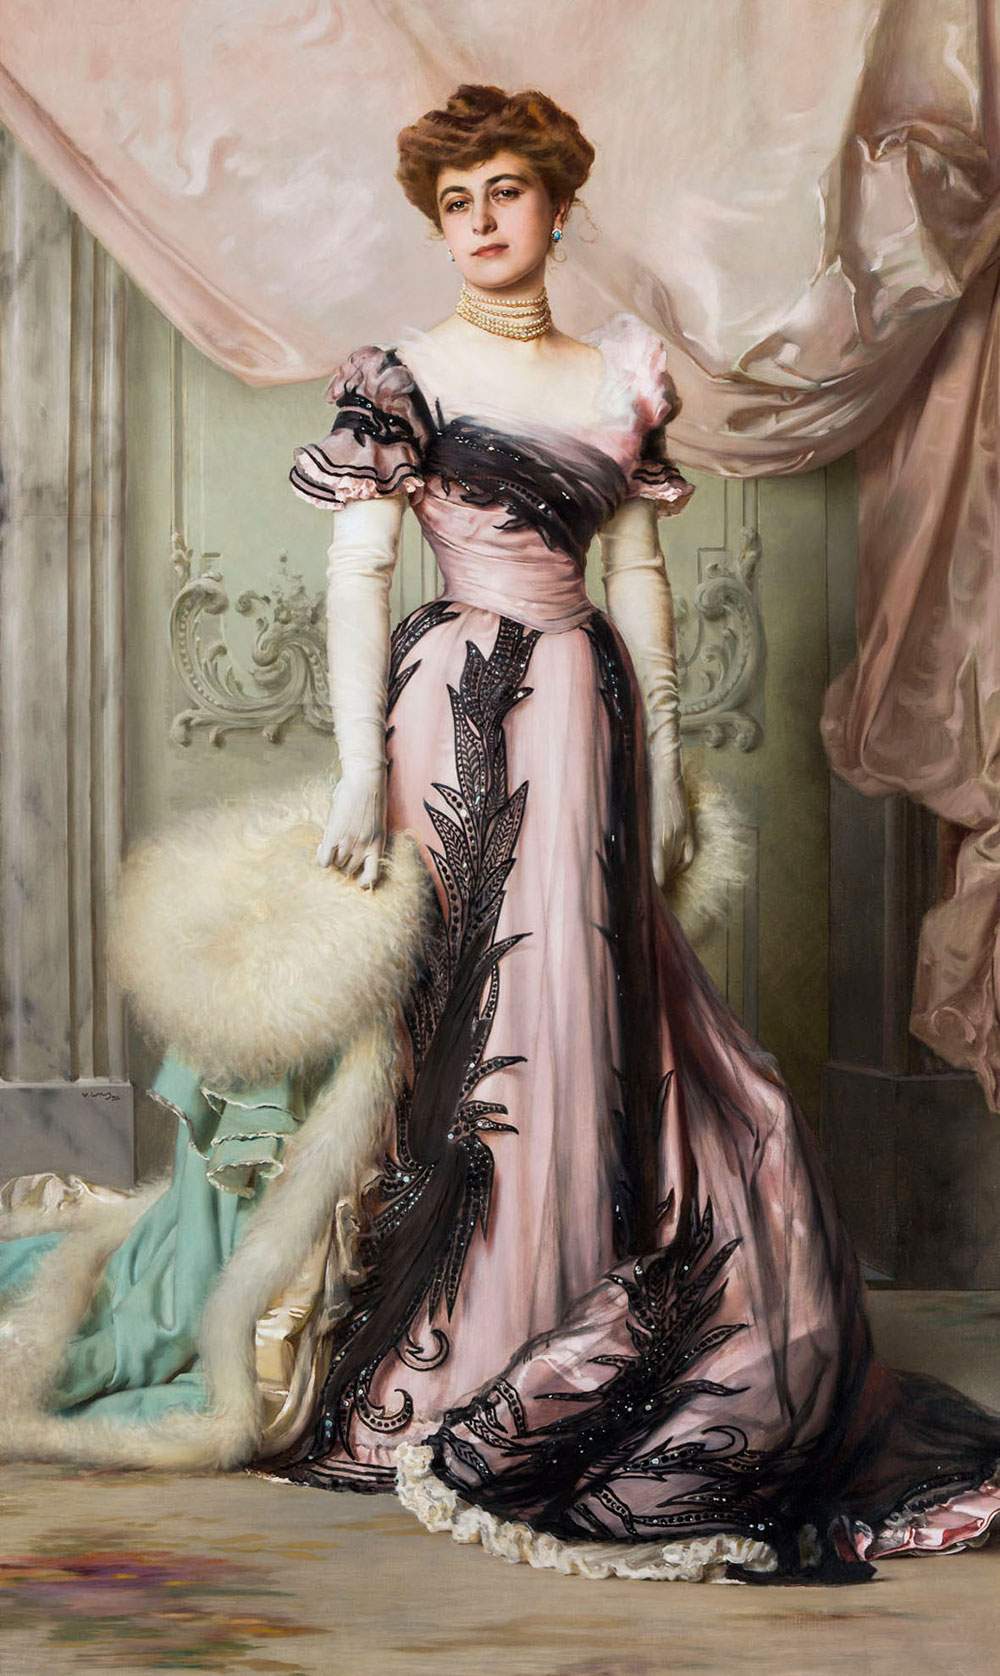 Les femmes et la mode dans la seconde moitié du XIXe siècle : une exposition à Rancate pour comprendre le changement